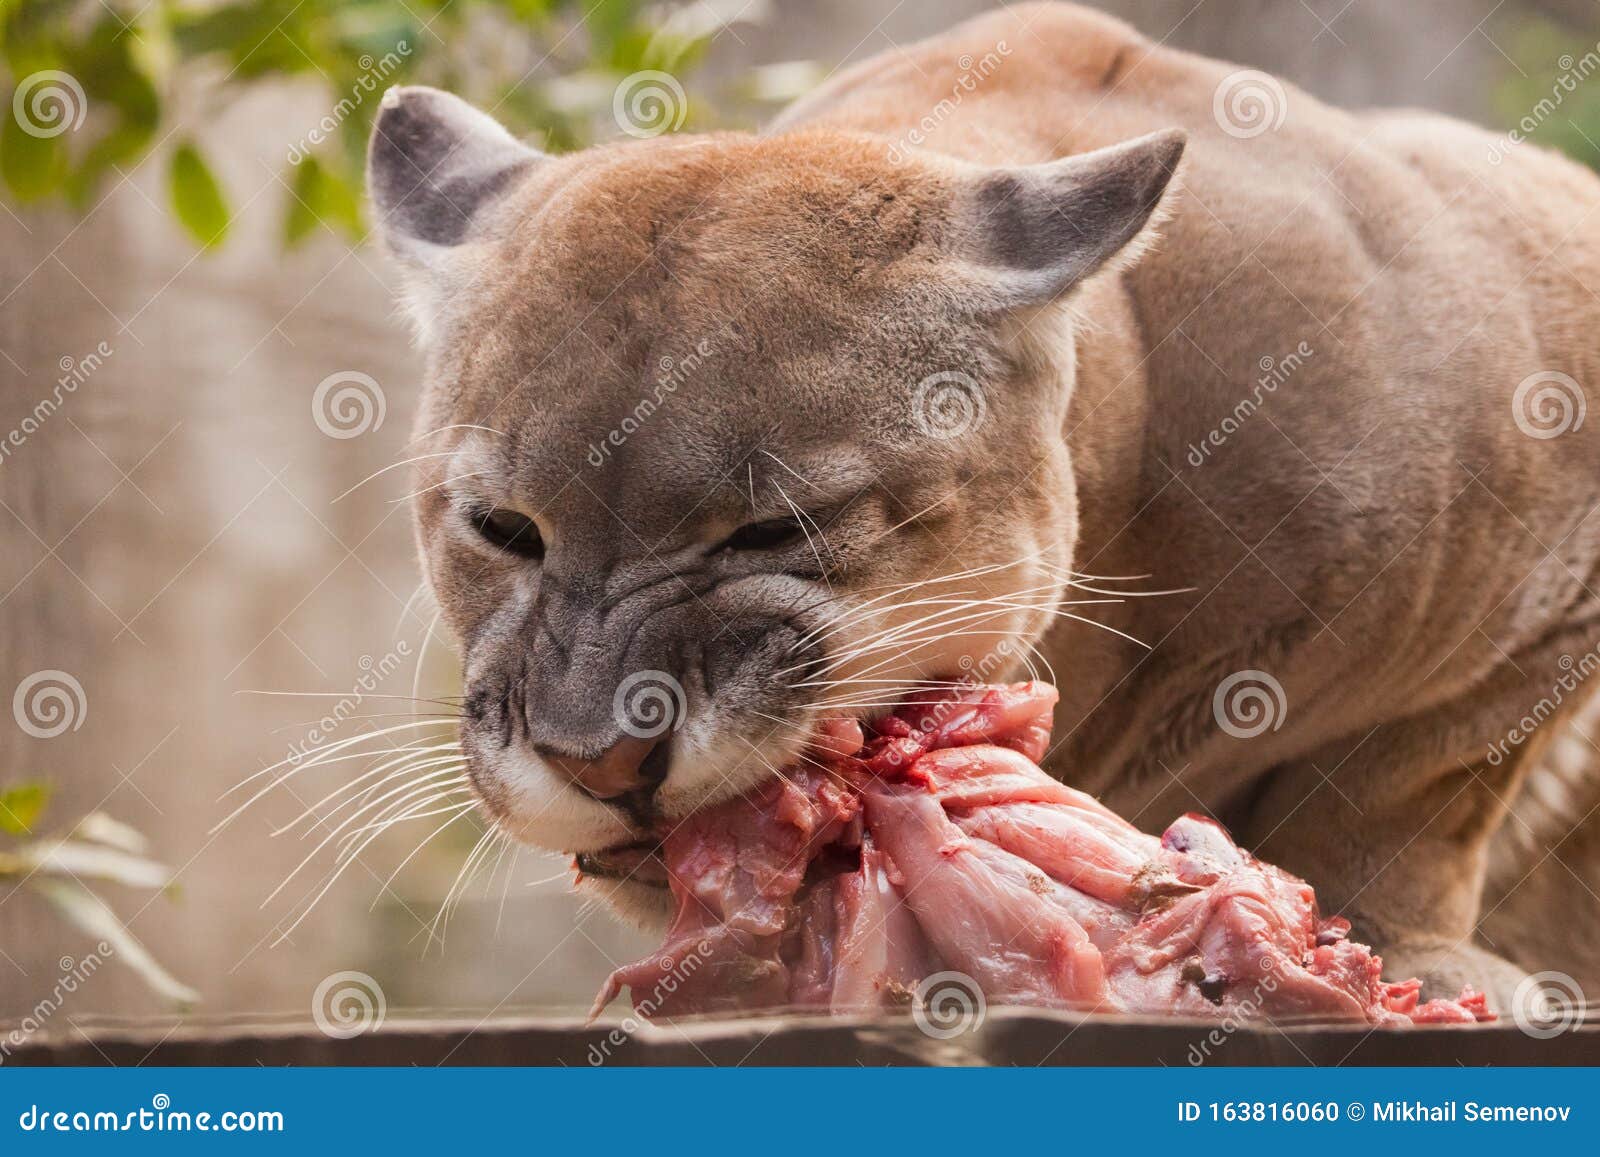 Comer Un Poco De Carne, Un Gran Puma De Gato, Bestia Depredadora Devora a Presa Con Entusiasmo, Retrato De Cerca Foto de archivo - Imagen de piel, gusto: 163816060